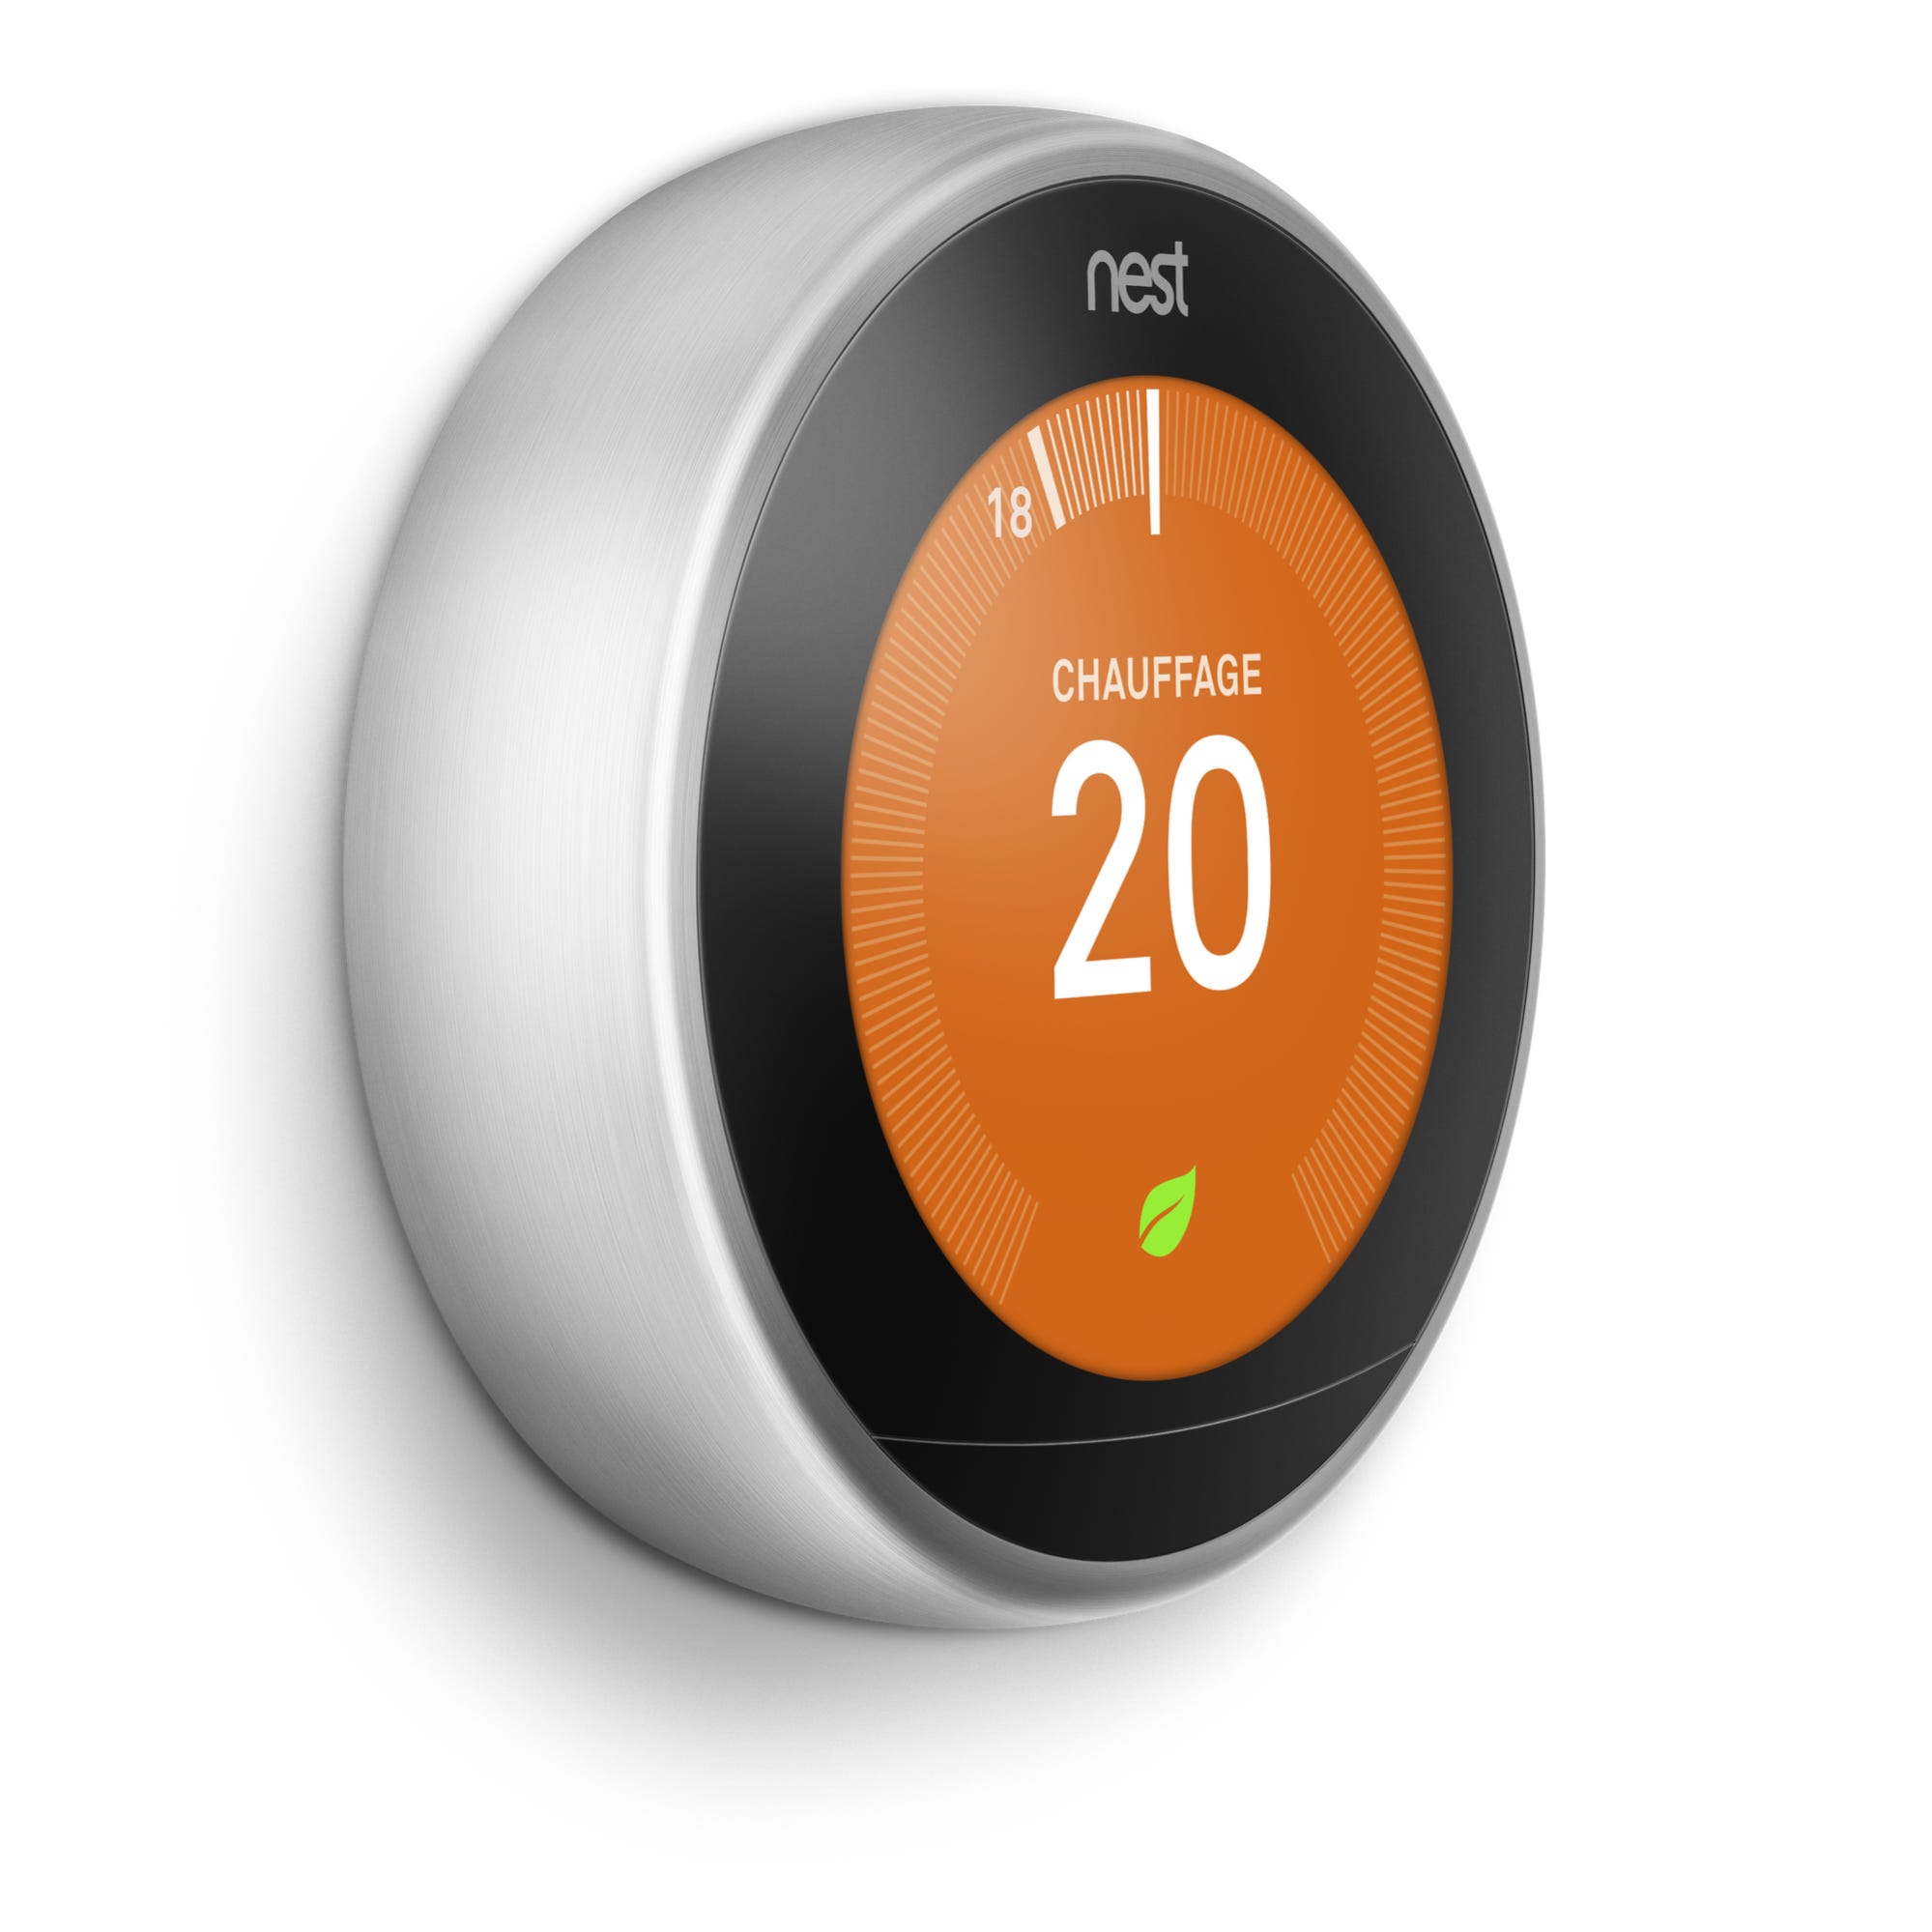 Thermostat connecté, la solution pour des économies d'énergie - wendel